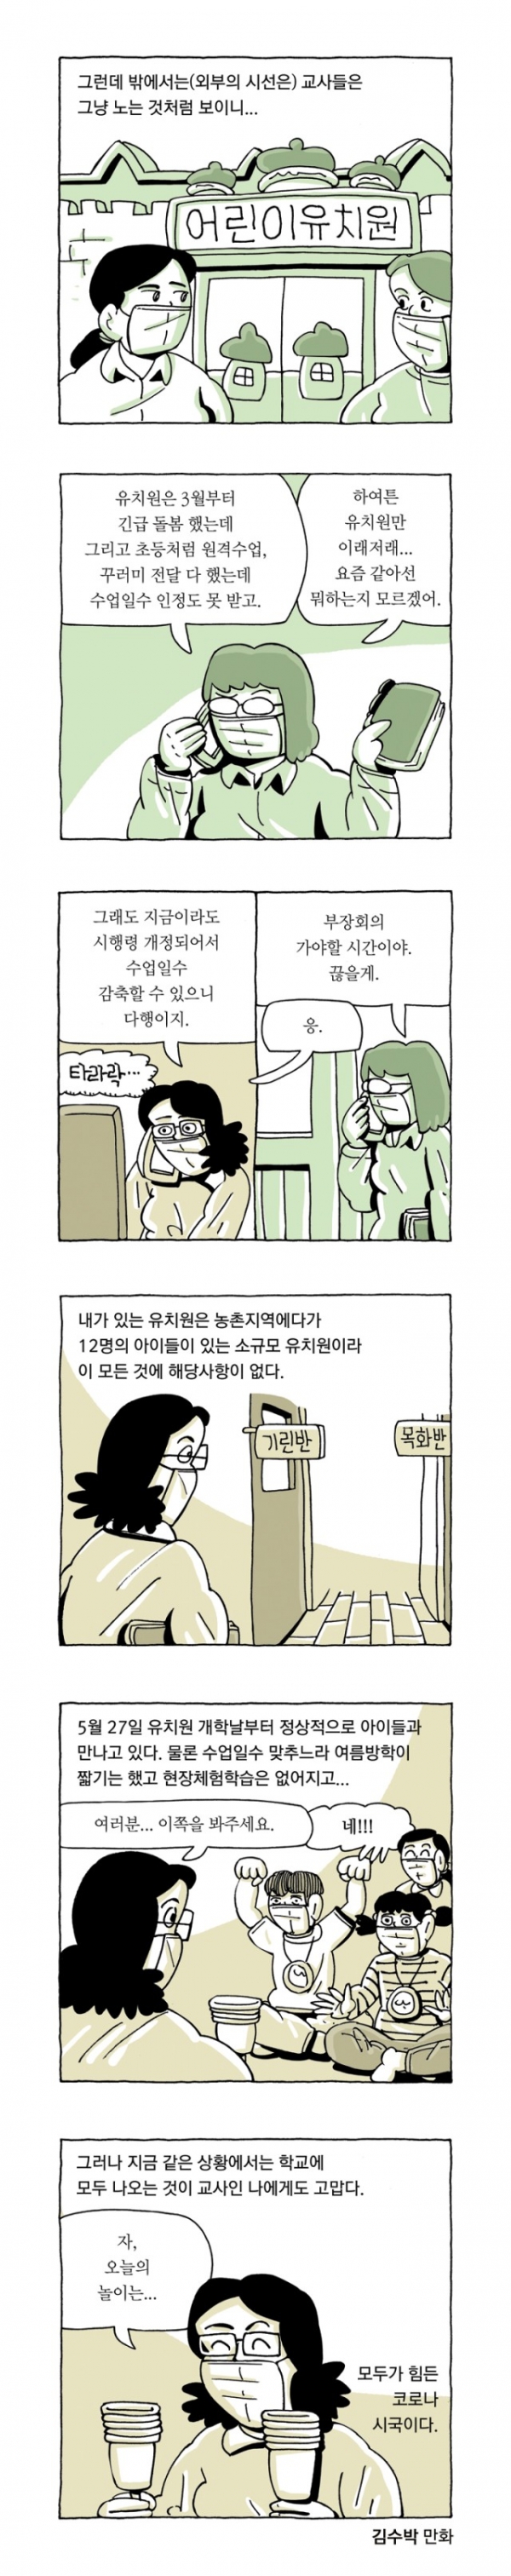 ⓒ 전교조 경북지부